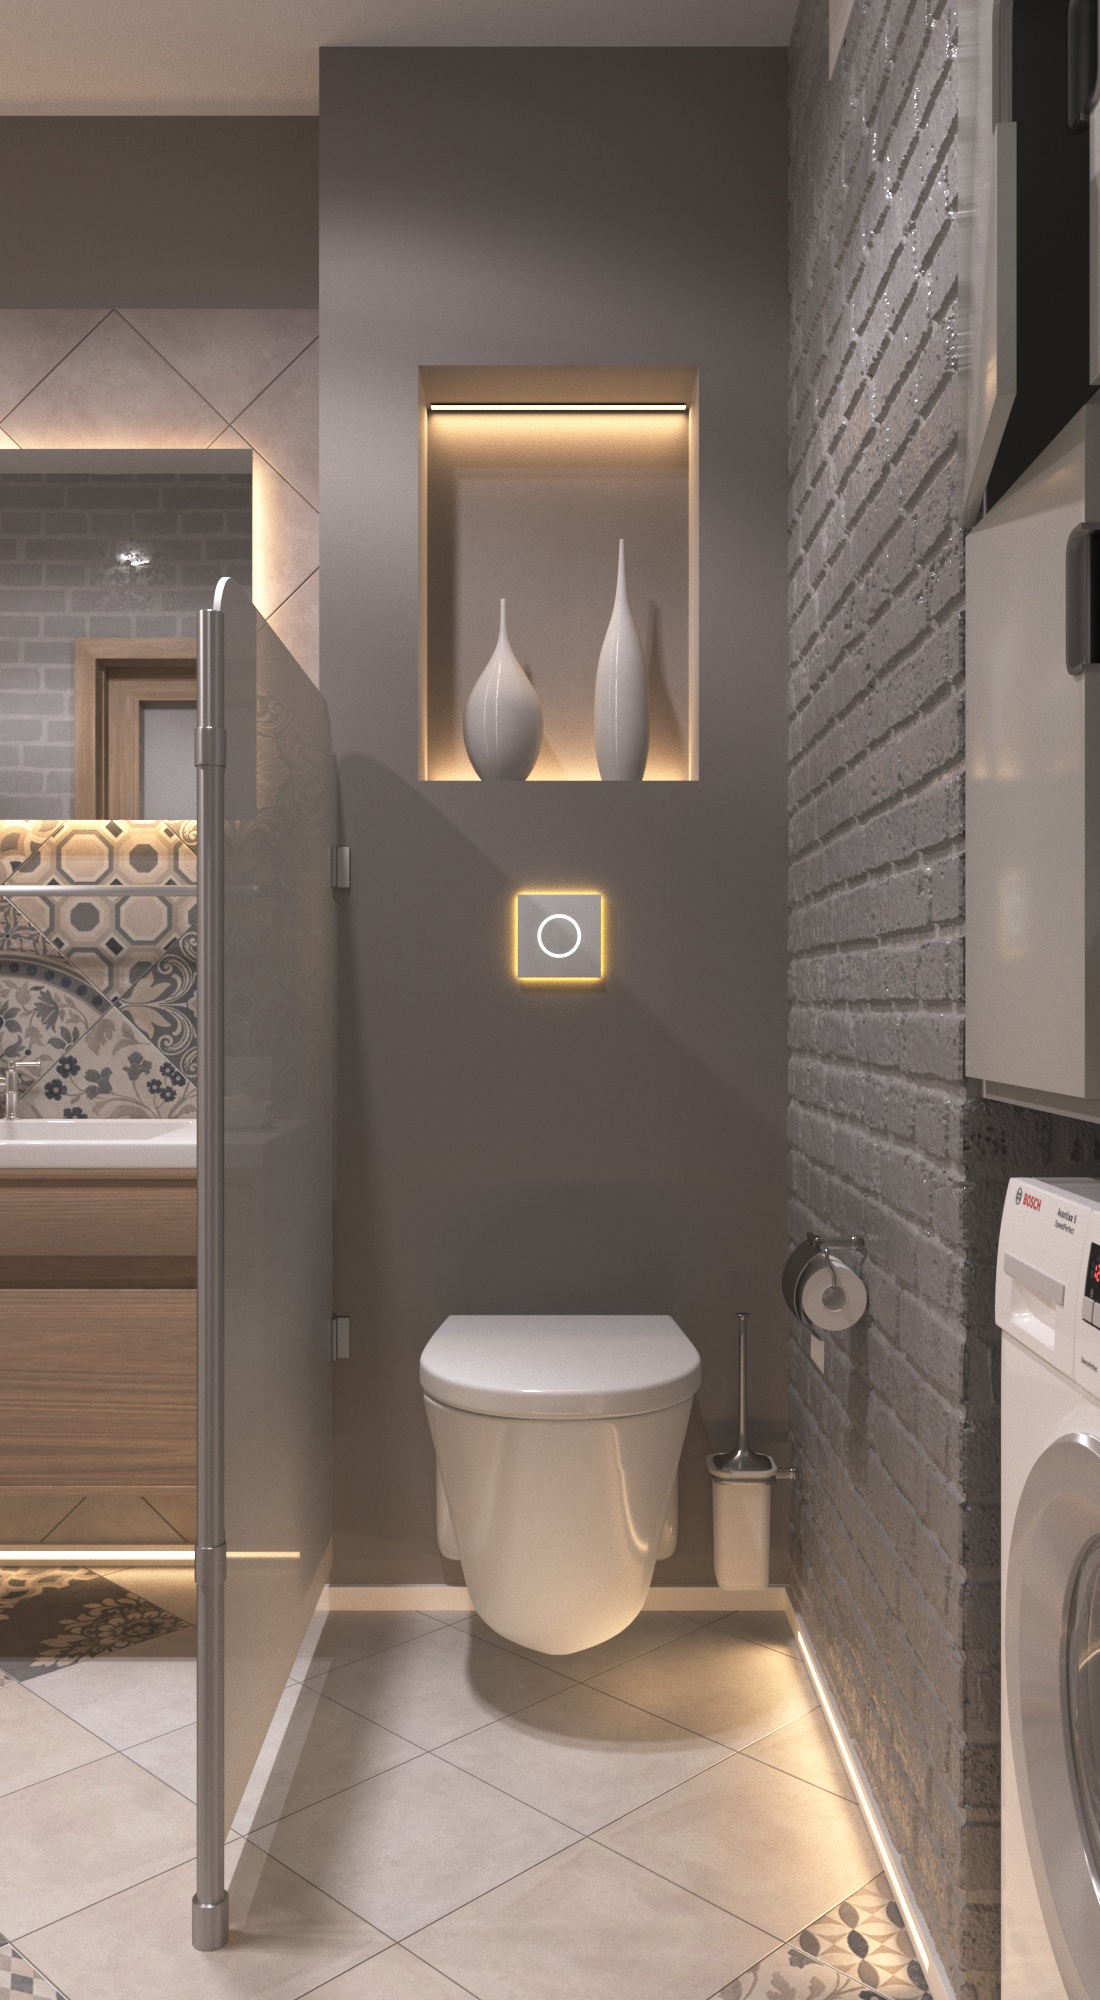 Bedroom interior, washroom design, bathroom design,modern toilet design, 